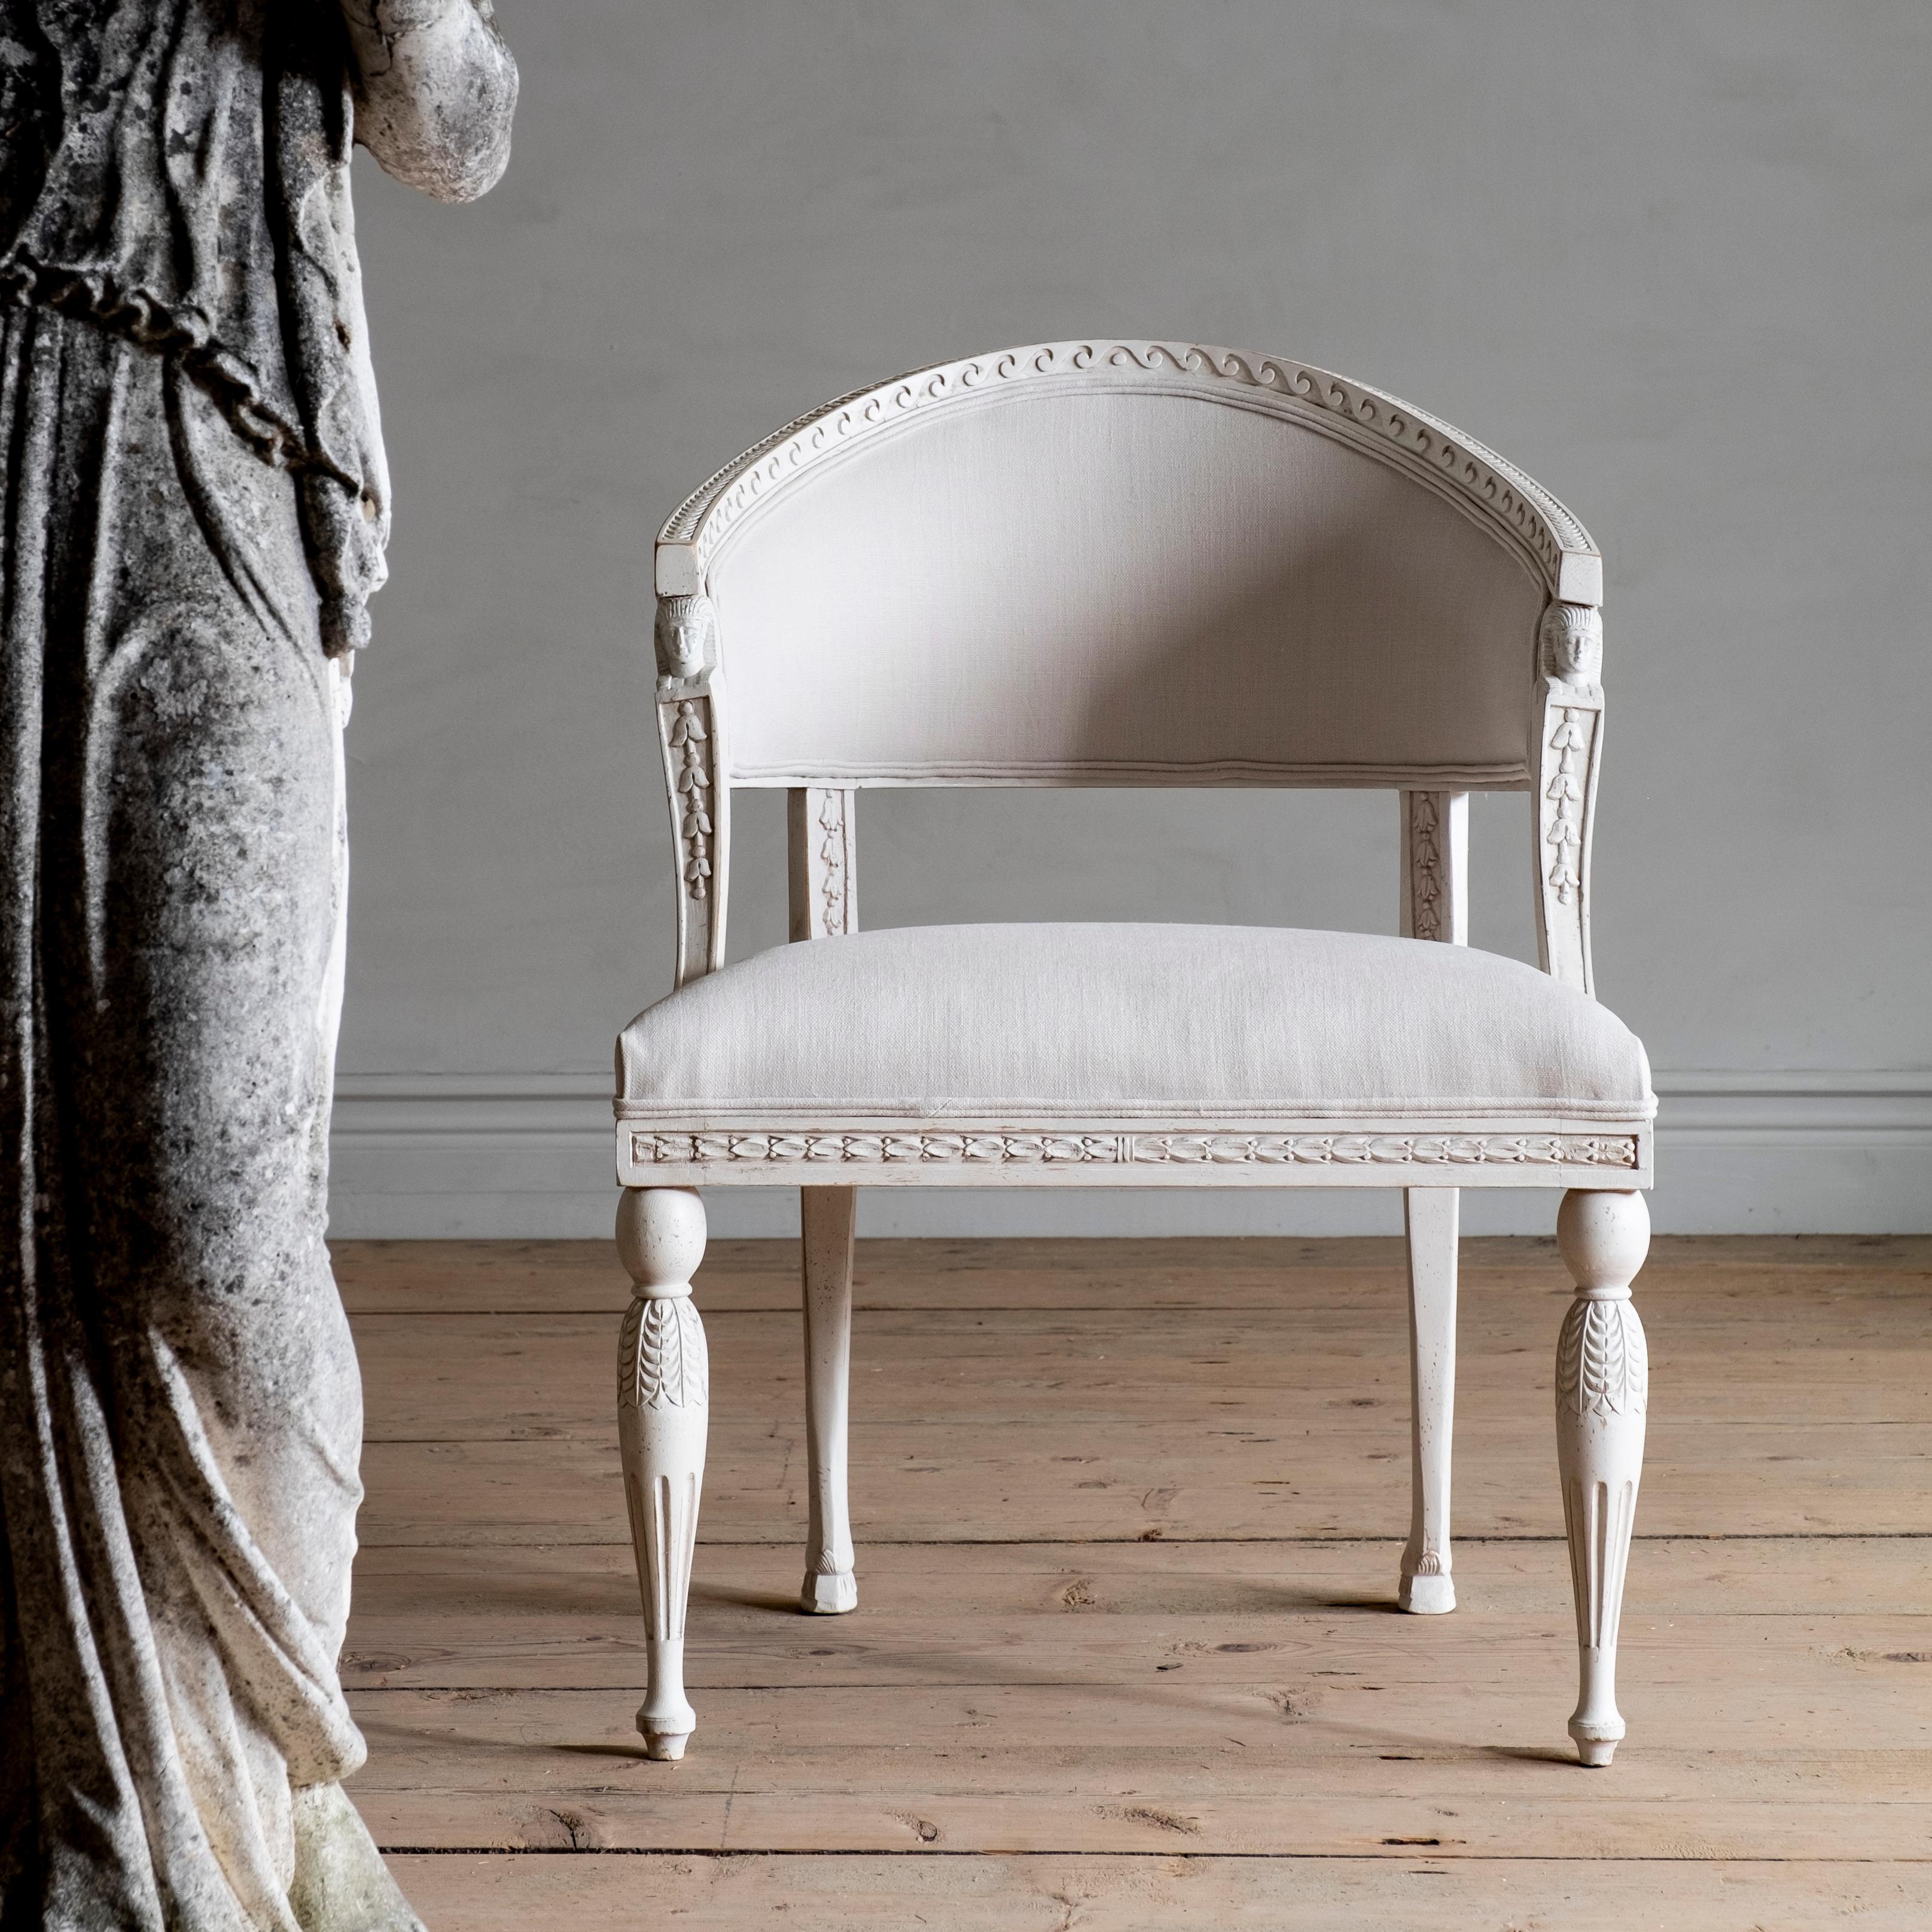 Limitierte Auflage von D. Larsson, inspiriert von den feinsten schwedischen Möbeln des 18. bis 19. Jahrhunderts.

HAGA, eine feine Reproduktion eines Gustavianischen Sessels mit Fassrückenlehne, beeinflusst von einem Gustavianischen Sessel aus